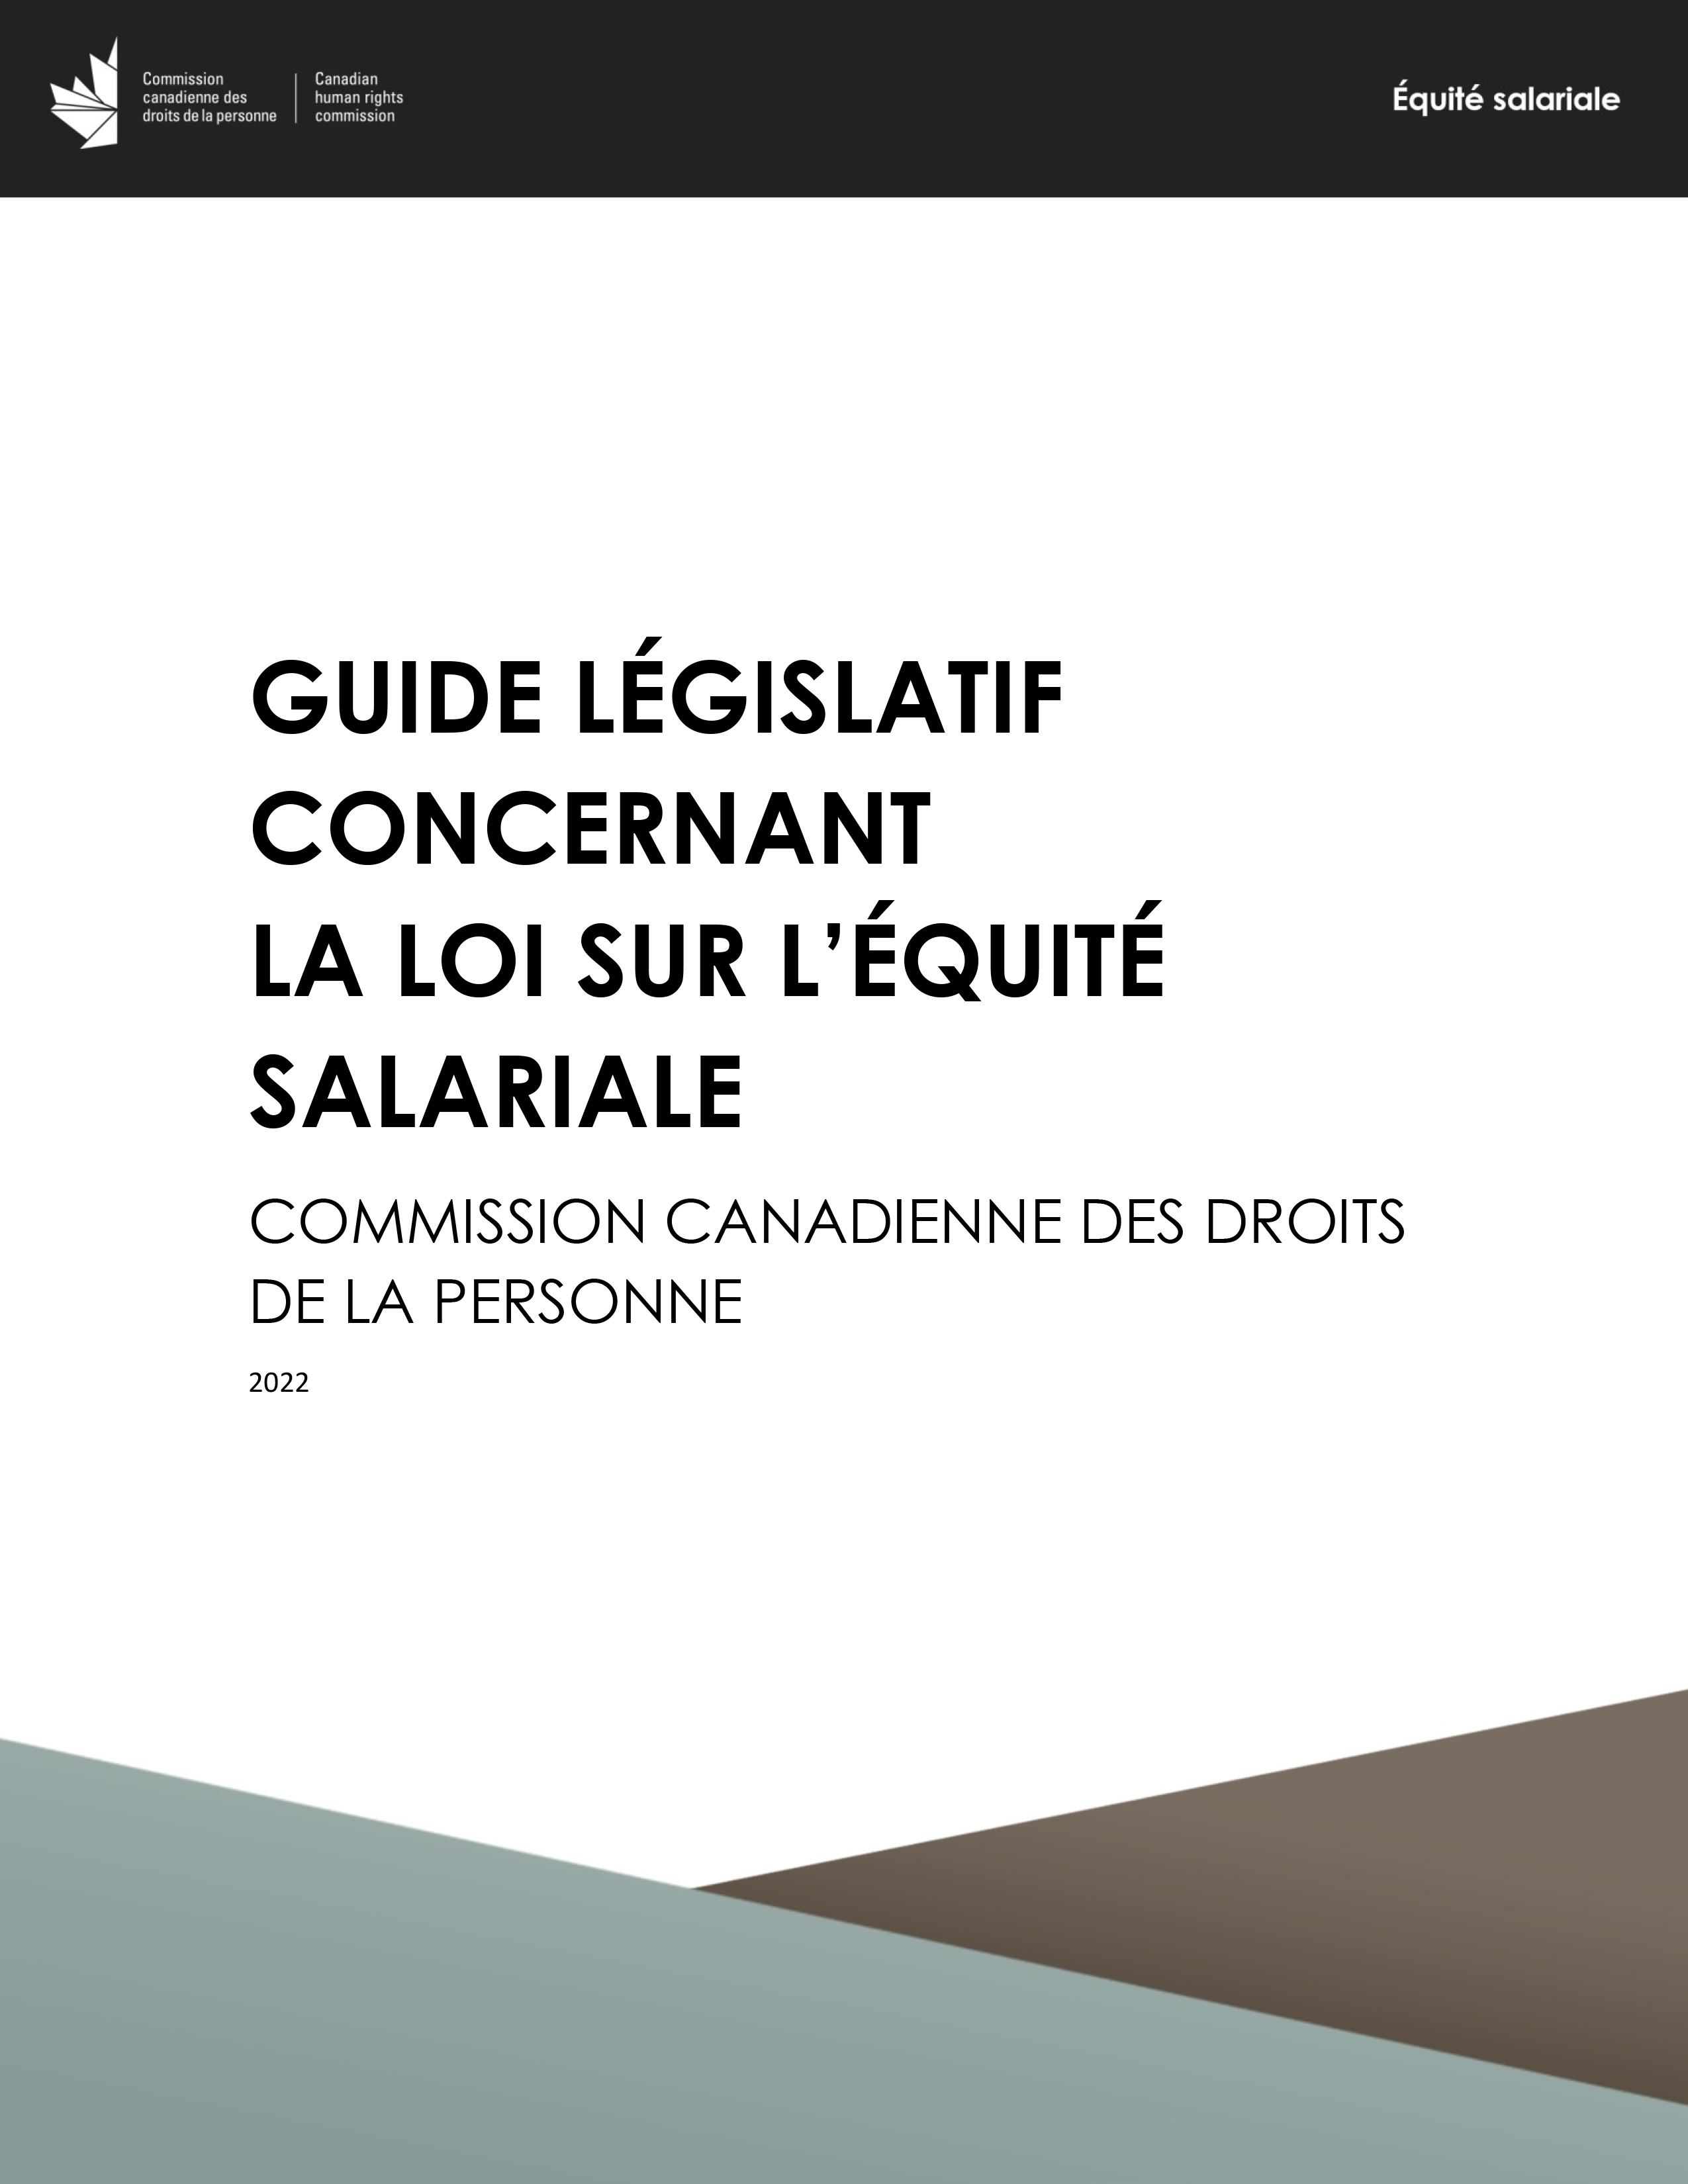 Guide législatif concernant la Loi sur l'équité salariale